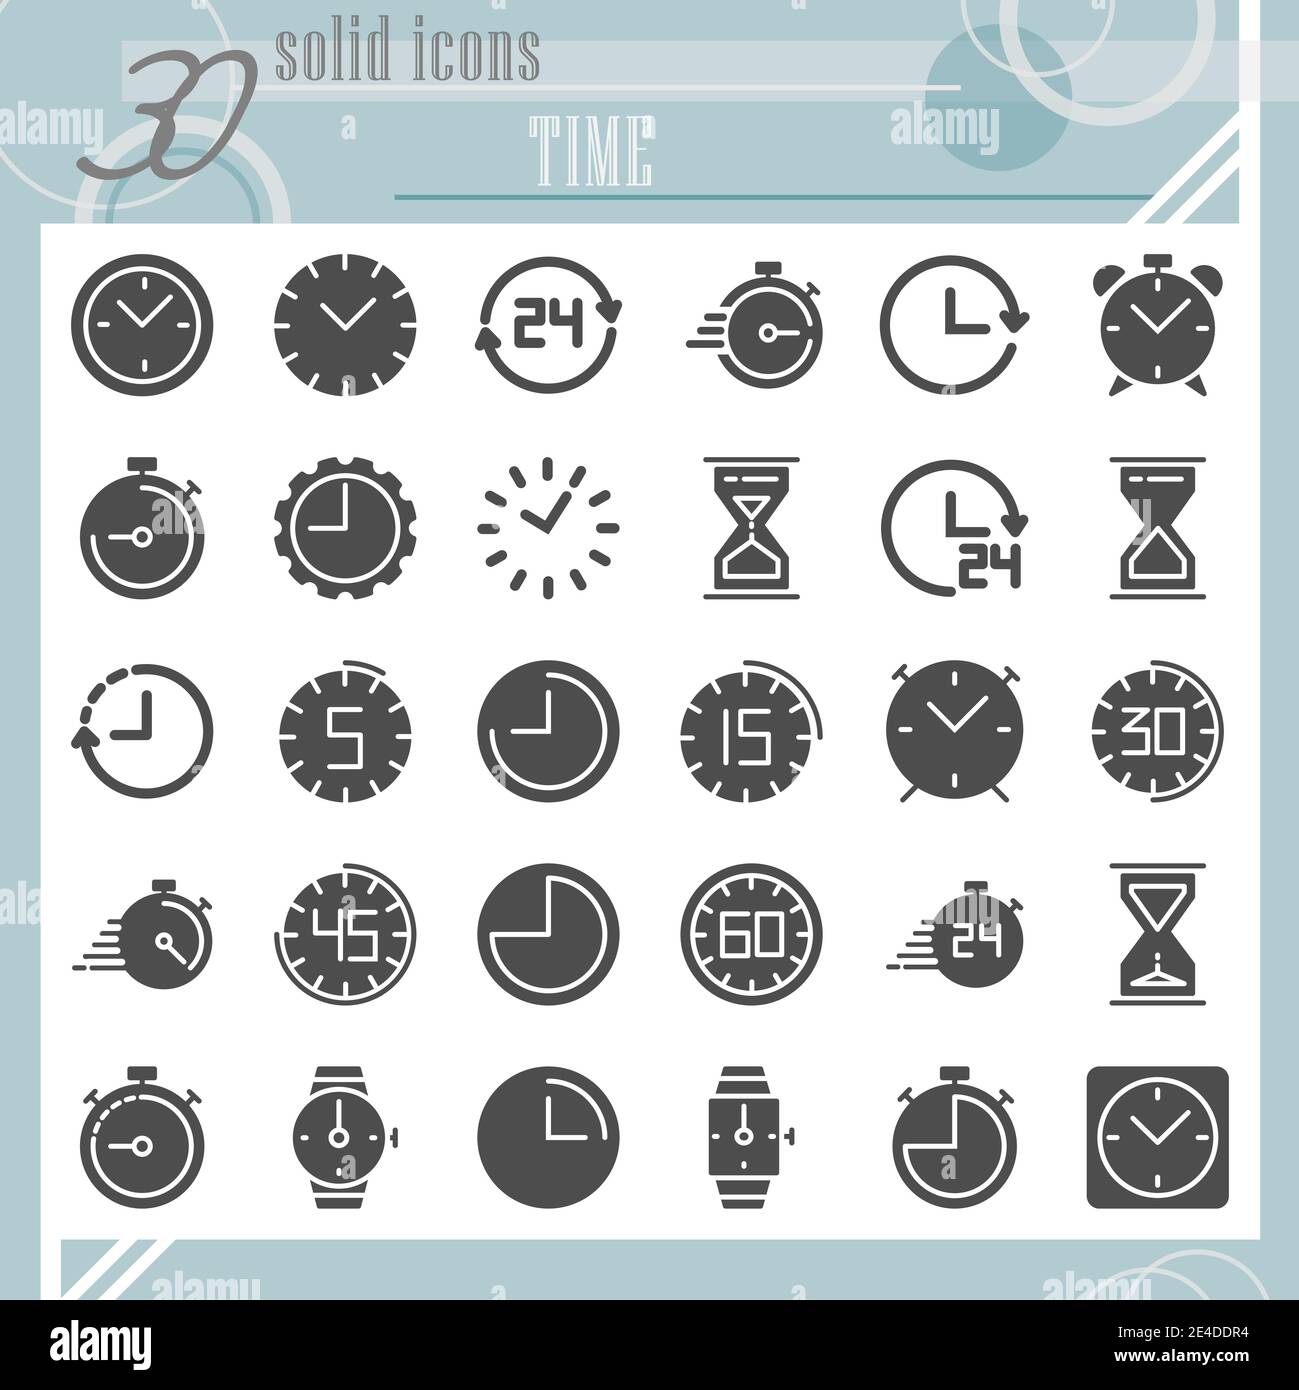 Jeu d'icônes de glyphe d'heure, collection de symboles d'horloge, croquis vectoriels, illustrations de logo, pictogrammes pleins de signes de montre ensemble isolé sur fond blanc Illustration de Vecteur